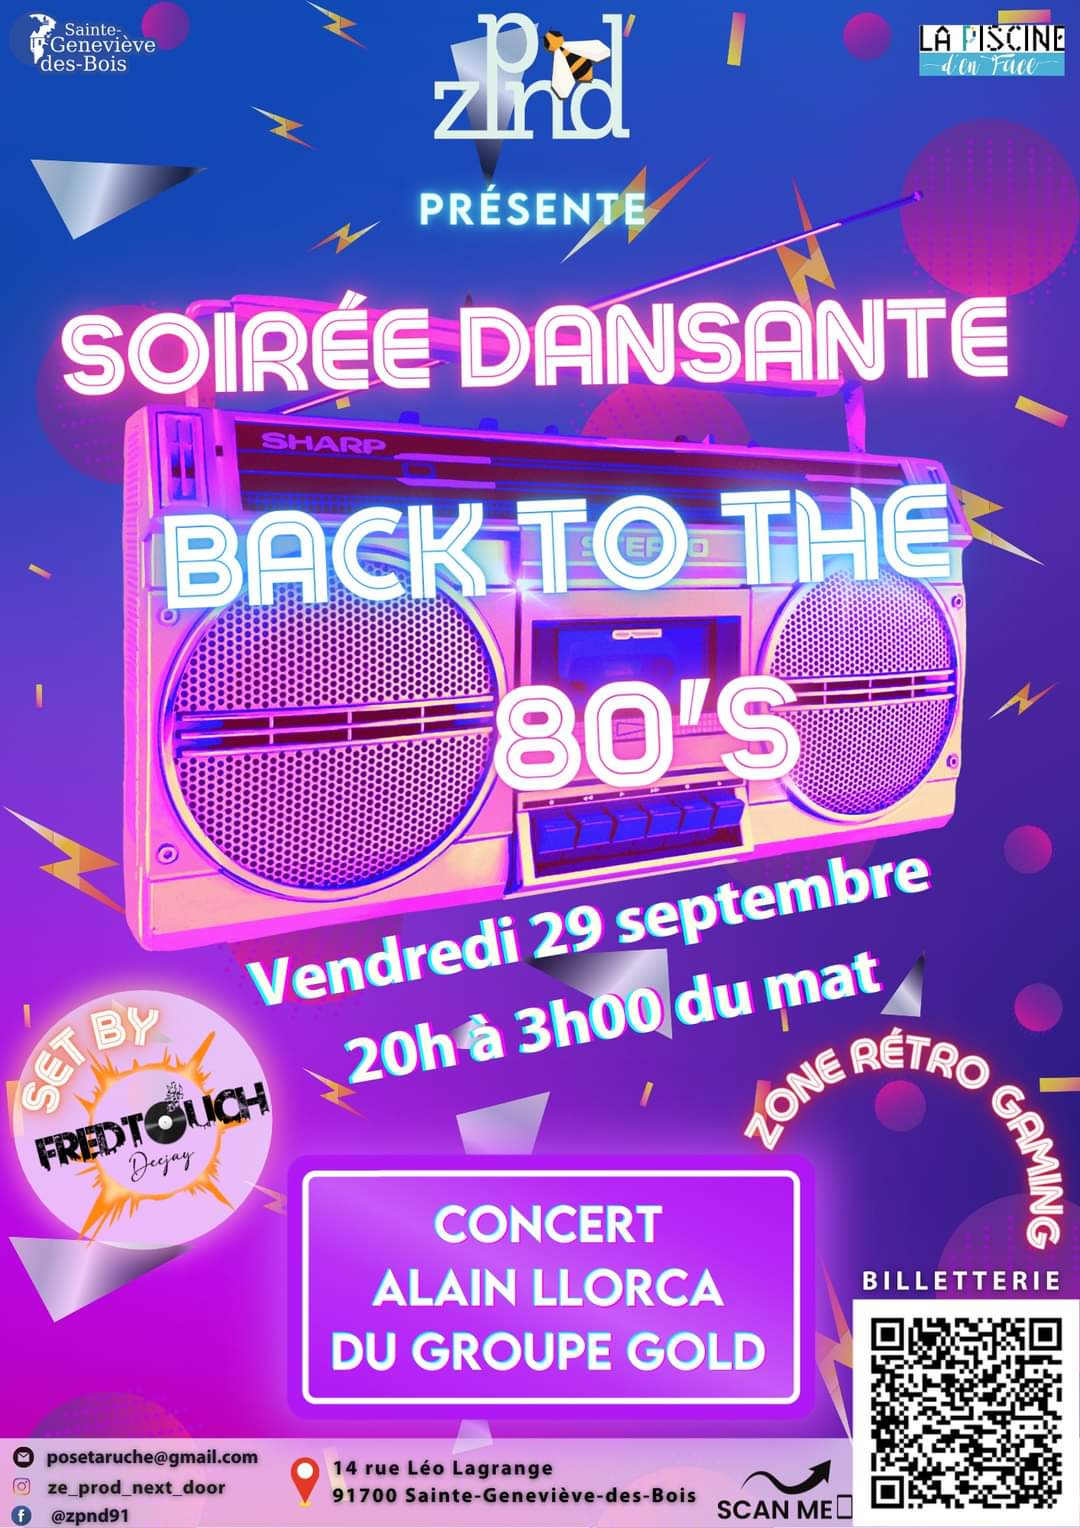 Soirée dansante - Back to the 80's